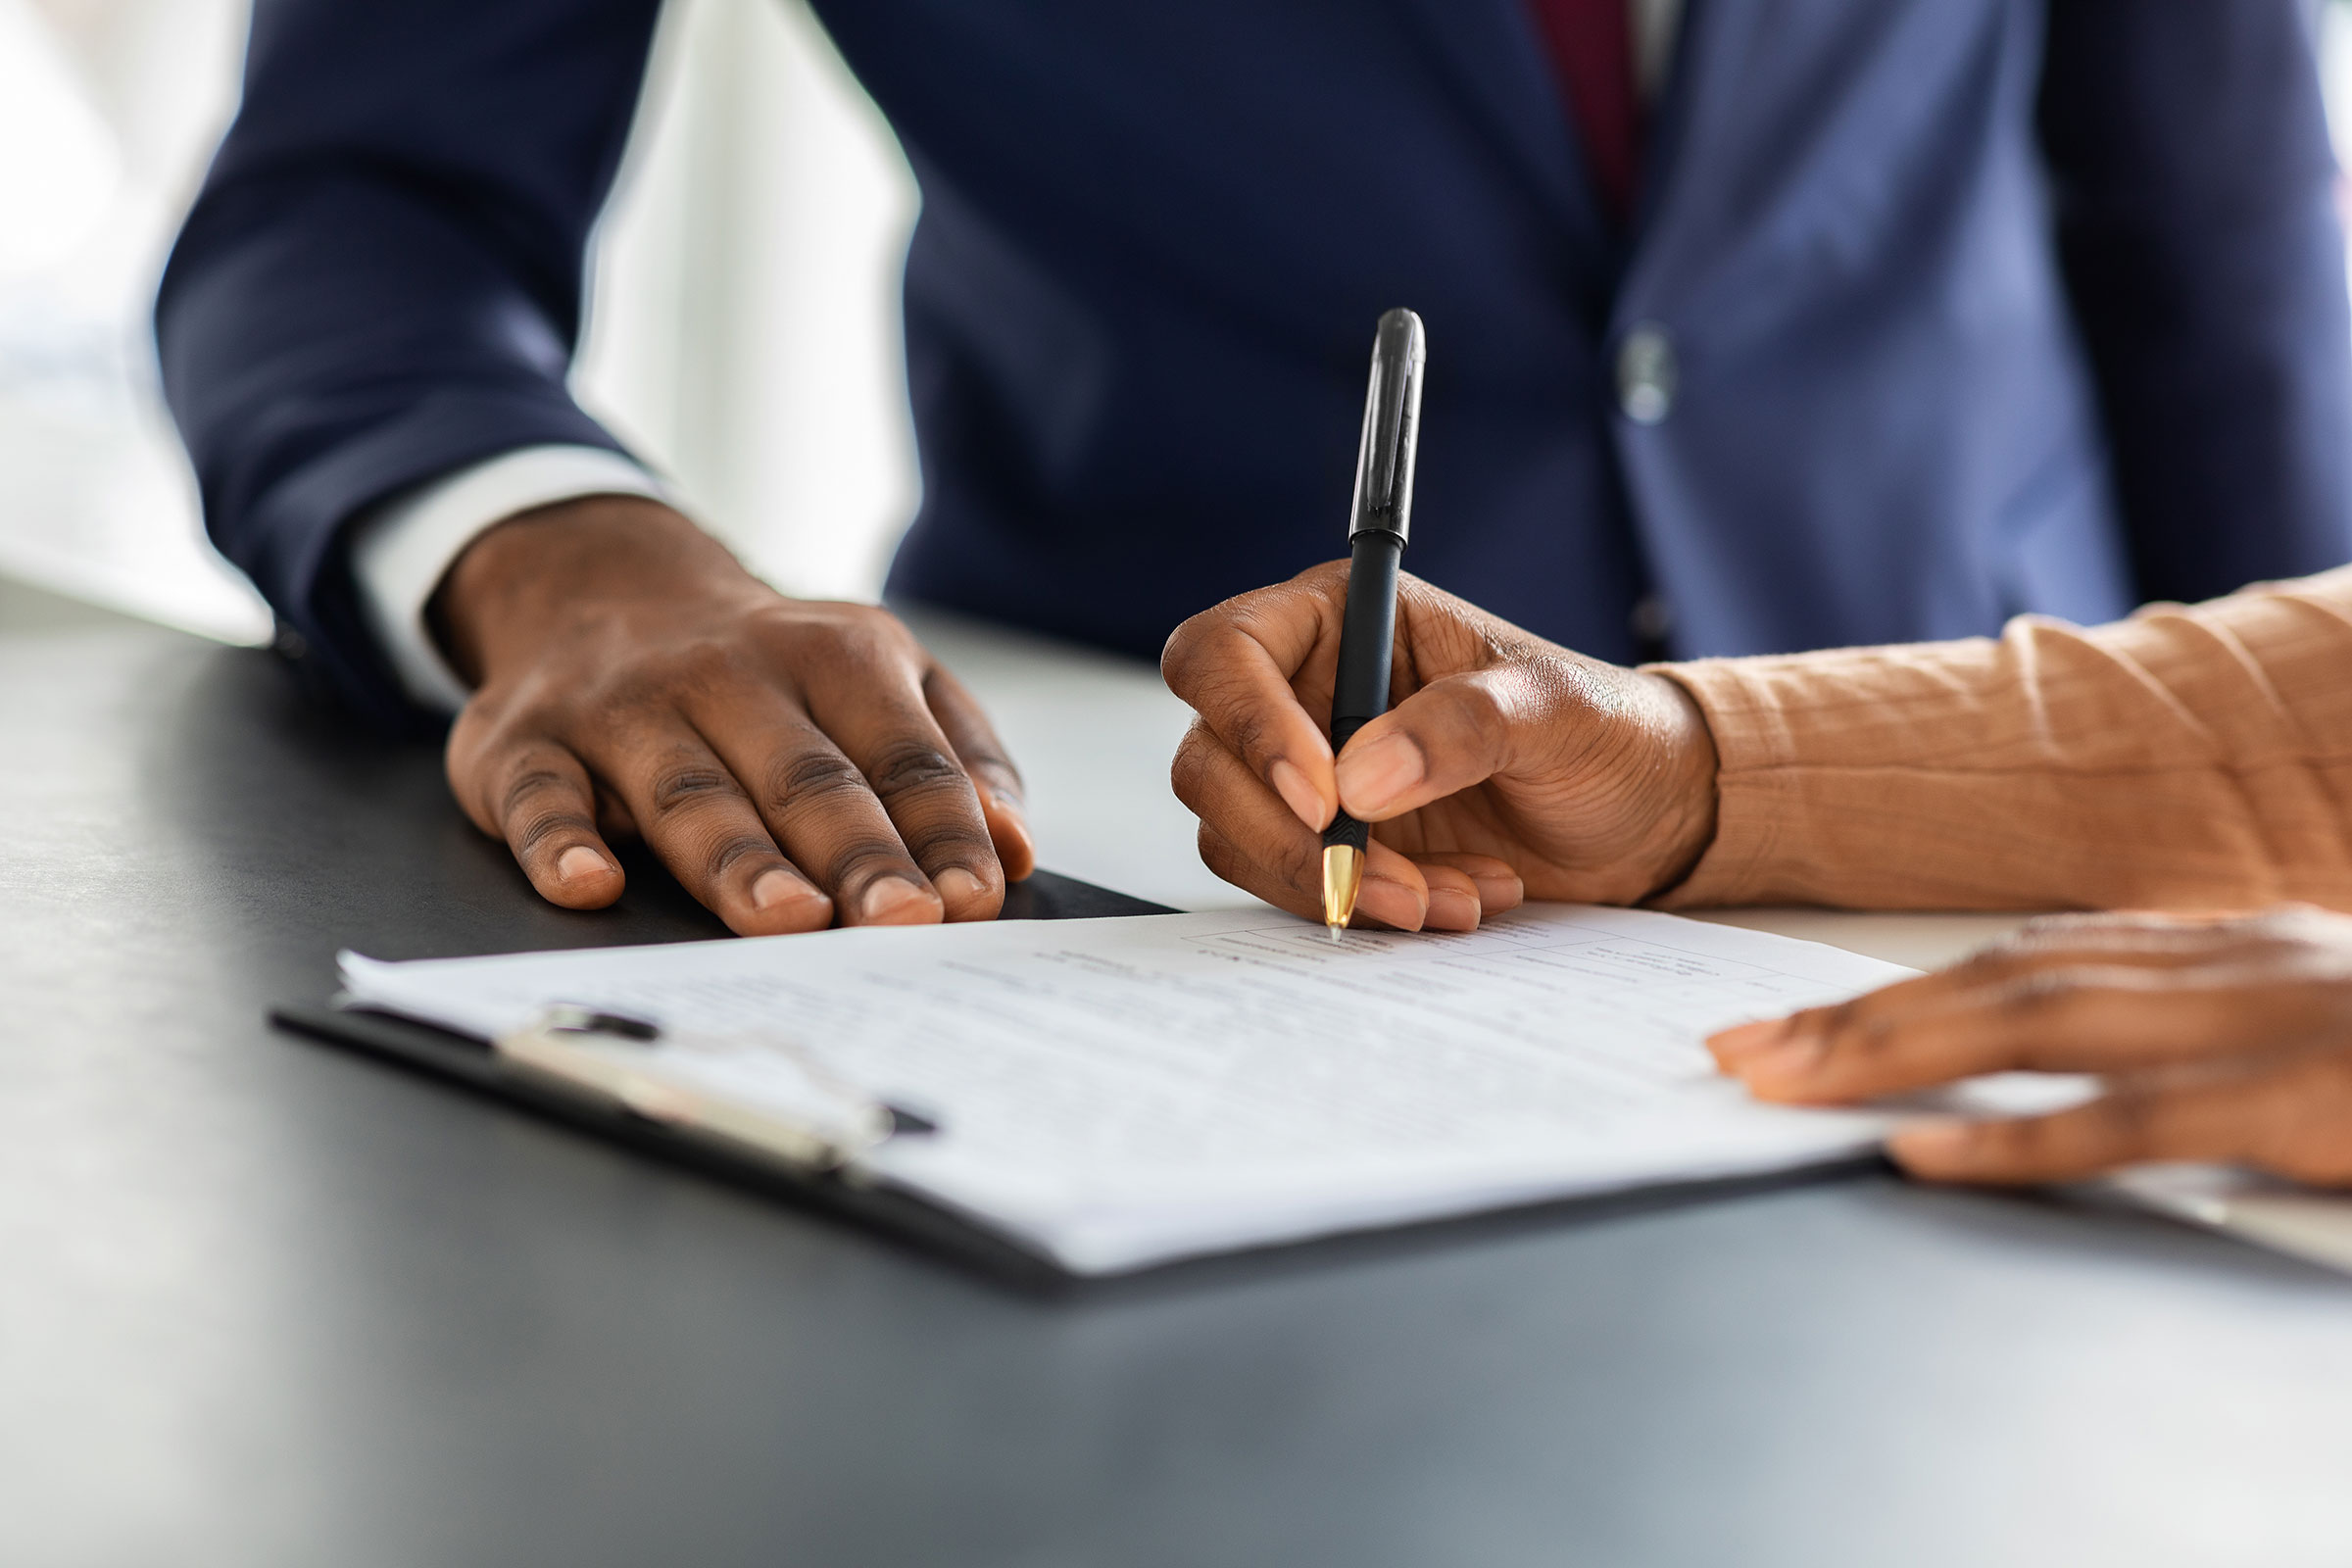 La main d'une personne tient un stylo et signe un document, tandis que la main d'un homme portant un costume est posée sur le bureau à côté des papiers.